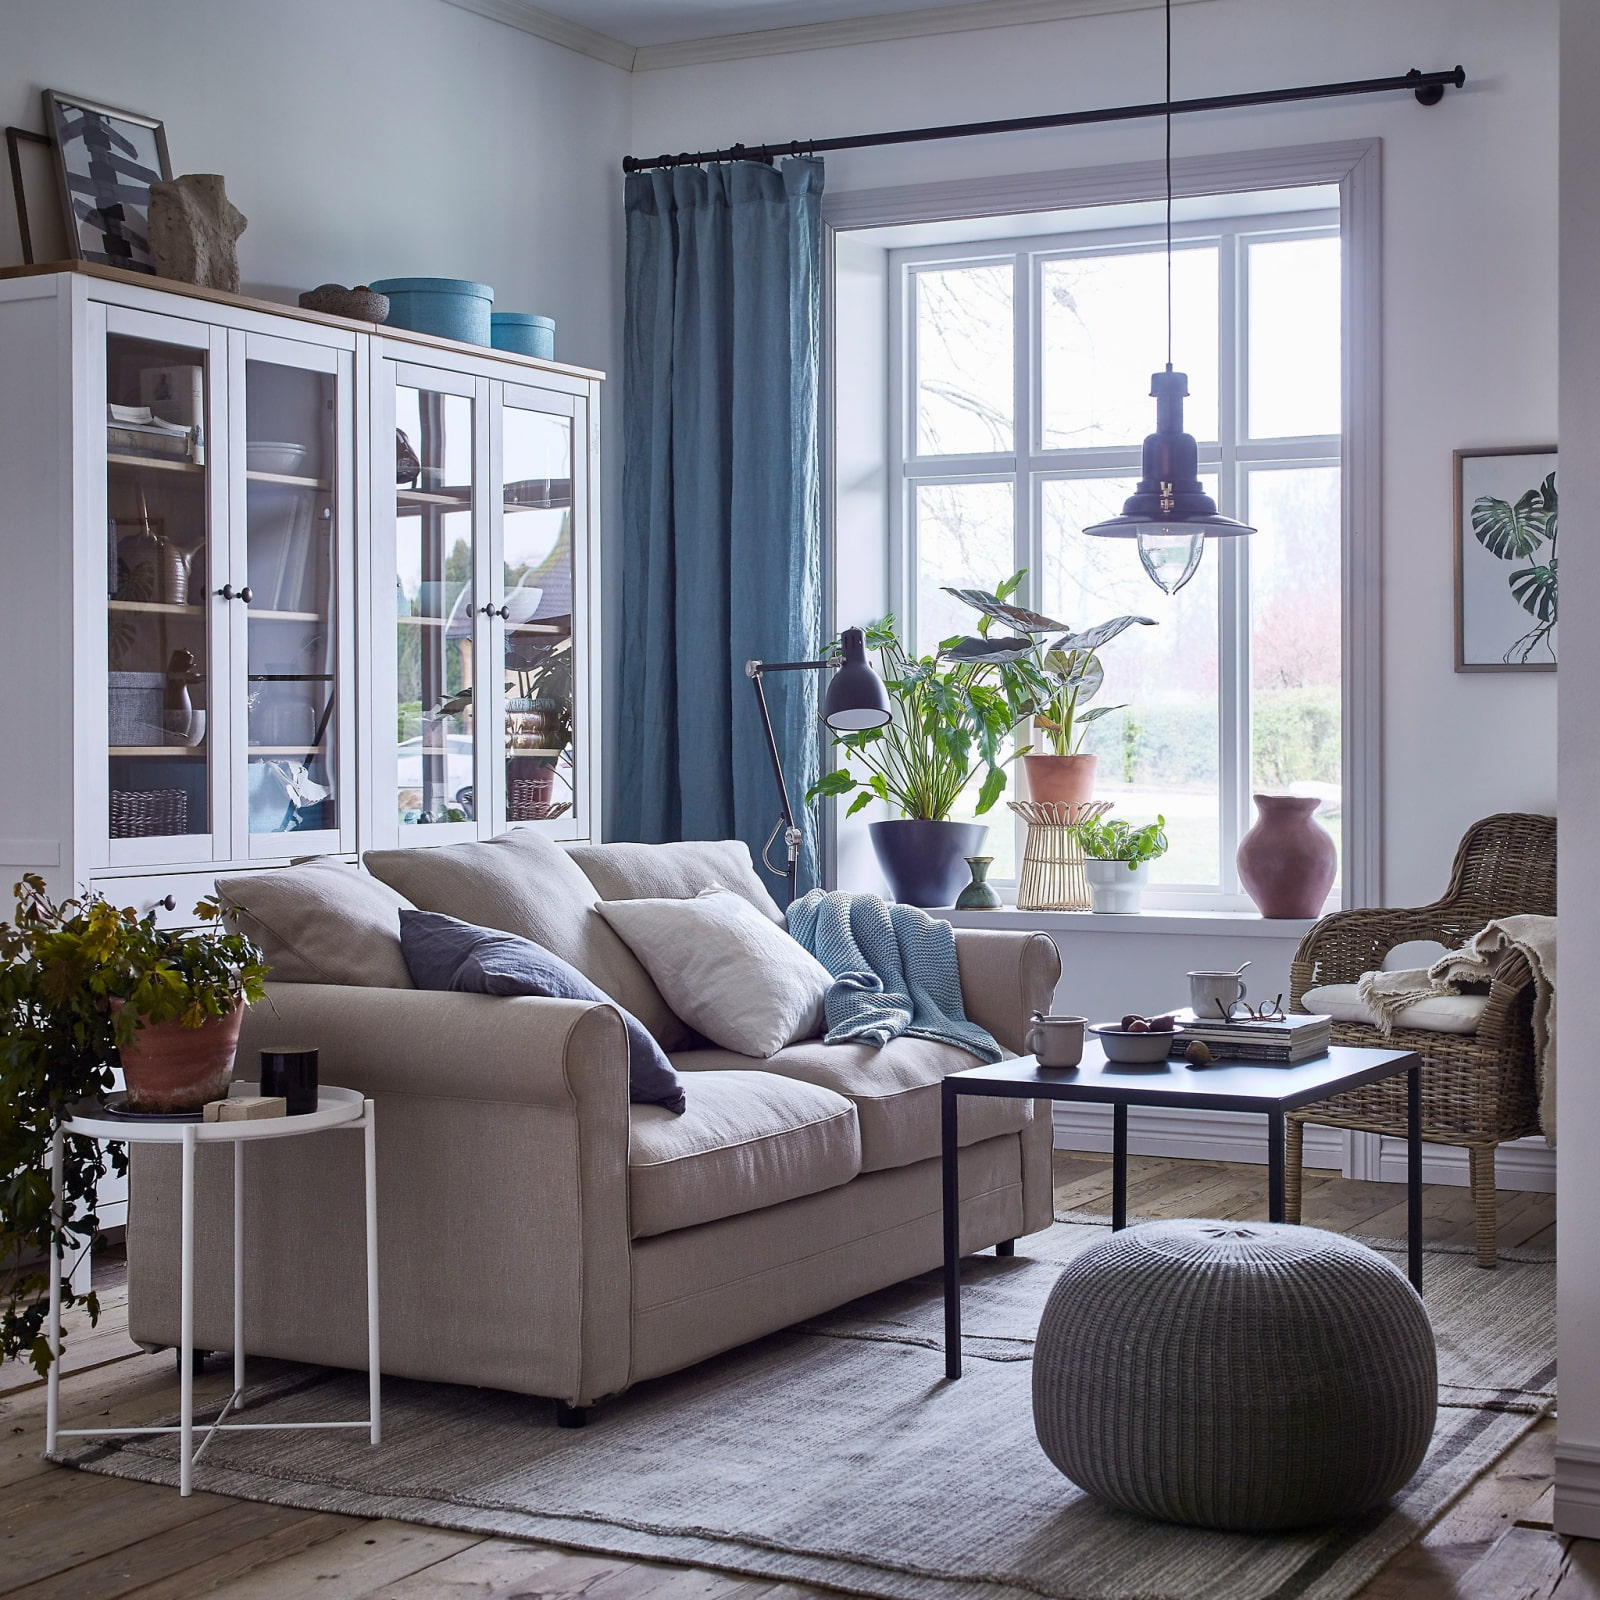 Белая мебель икеа: модные и стильные варианты оформления различных комнат и помещений ( фото)